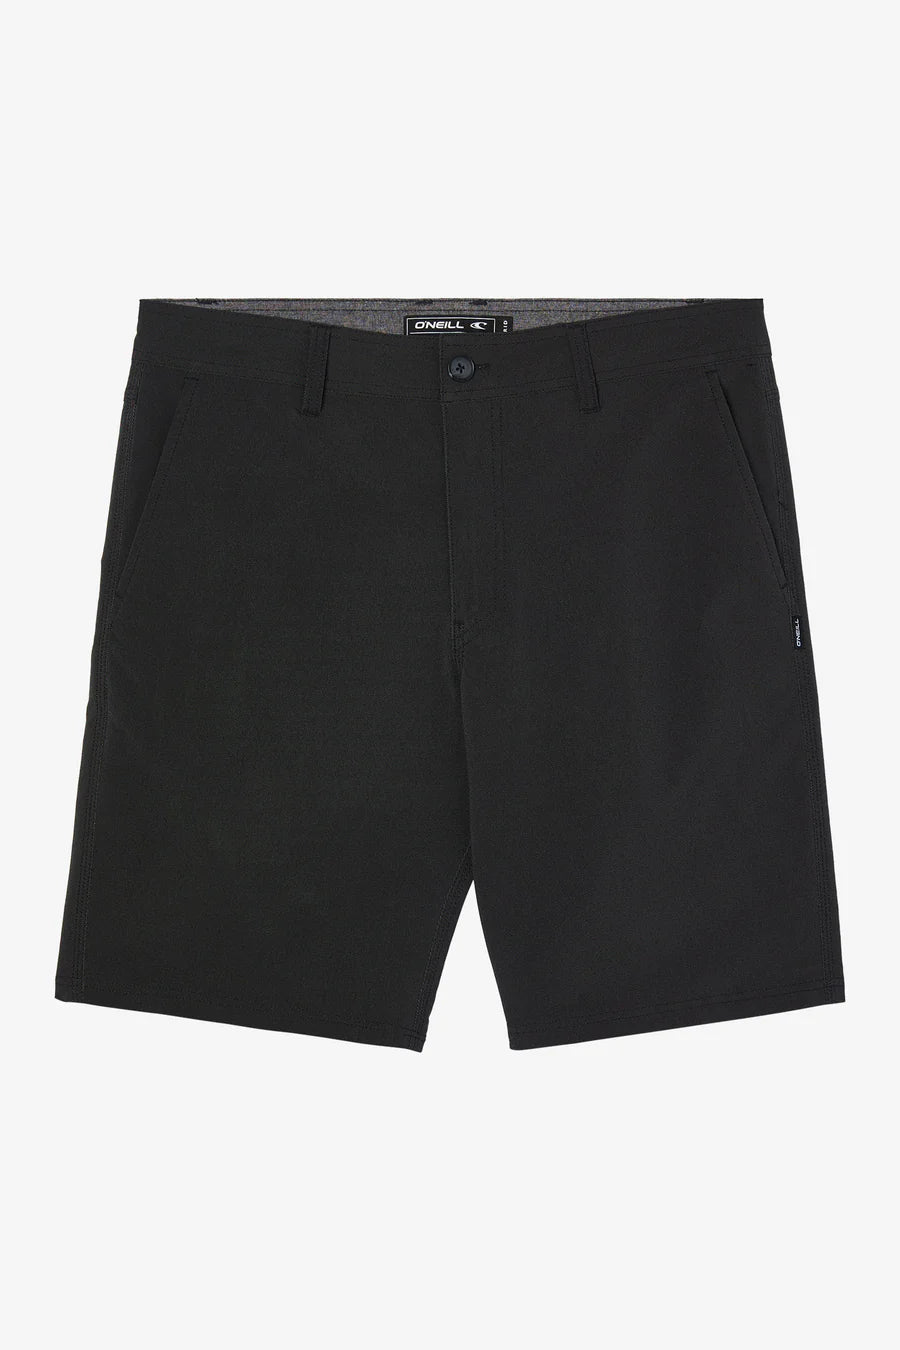 Stockton 20" Hybrid Shorts - Black